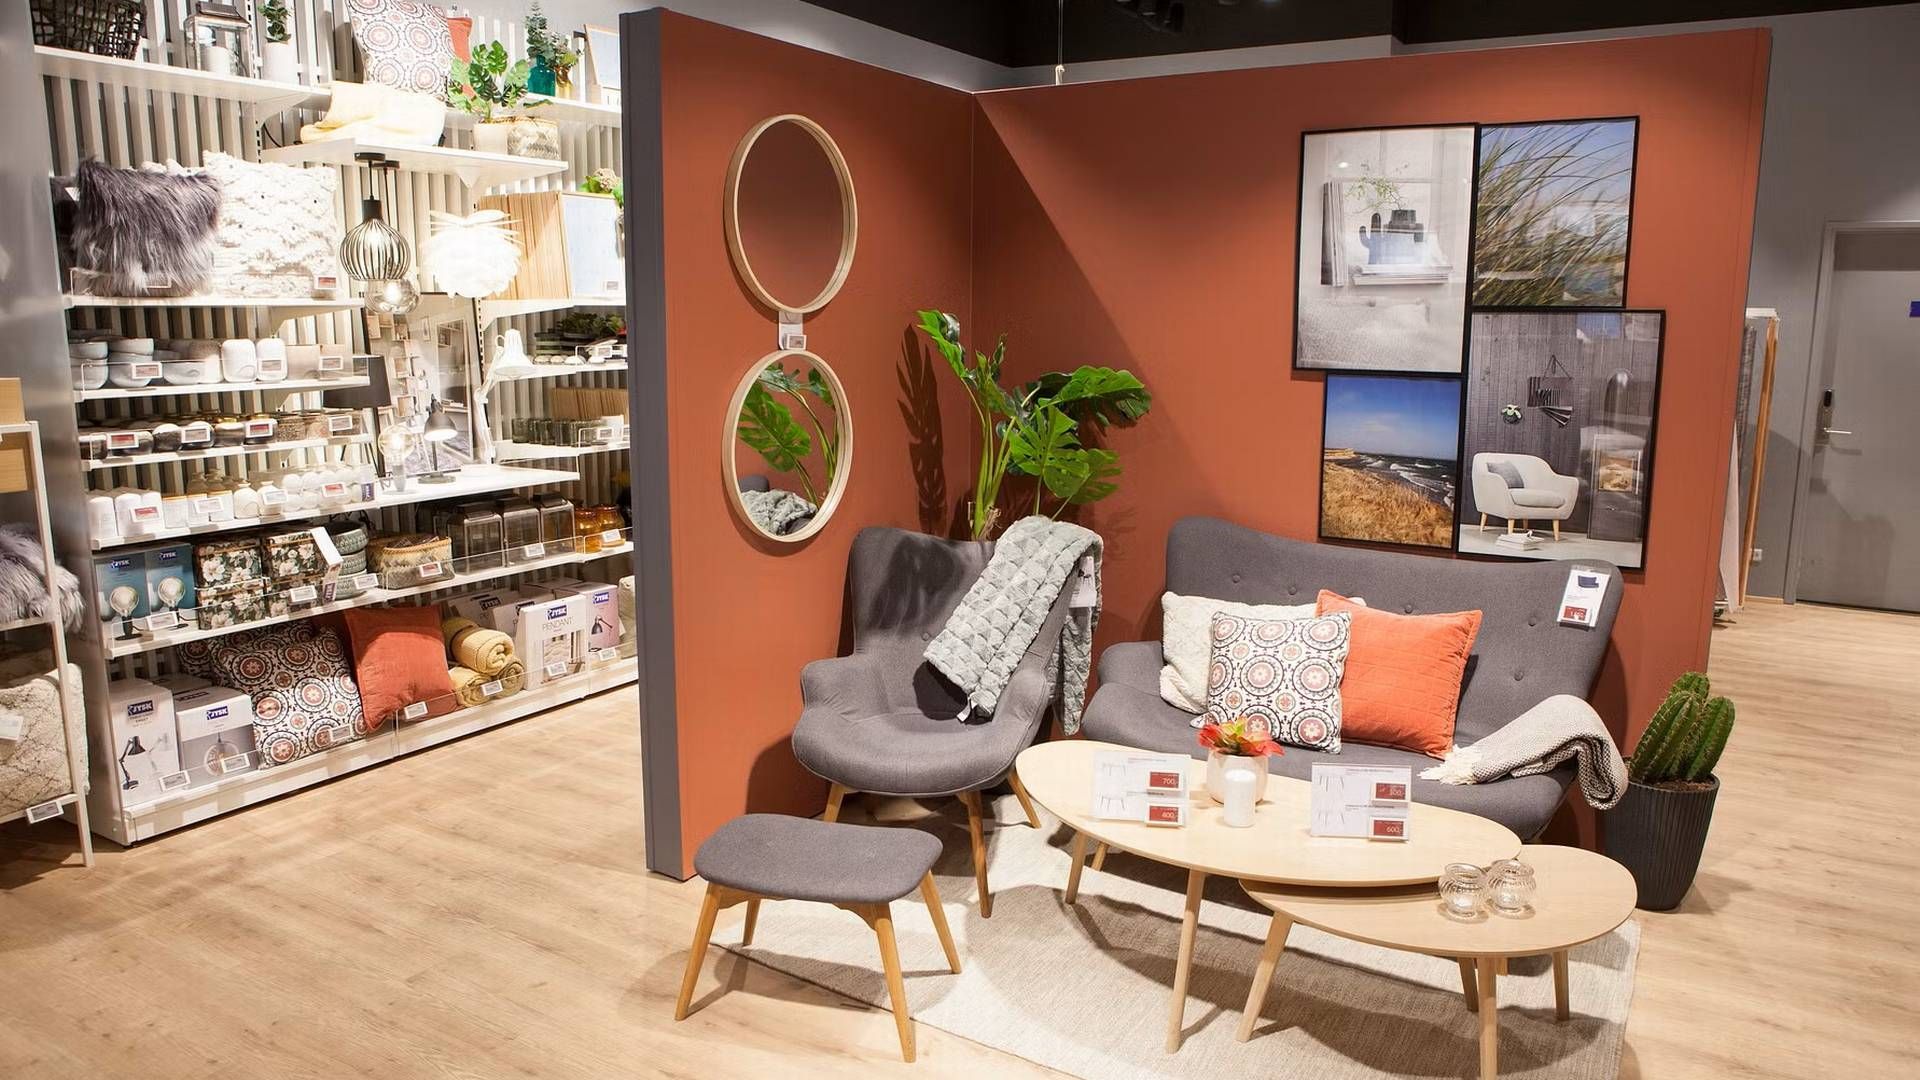 Jysk blev etableret 10 år efter Ikeas første varehus åbnede i Danmark. De to rivaler har i dag begge en dansk omsætning på over 5 mia. kr. | Foto: PR/Jysk